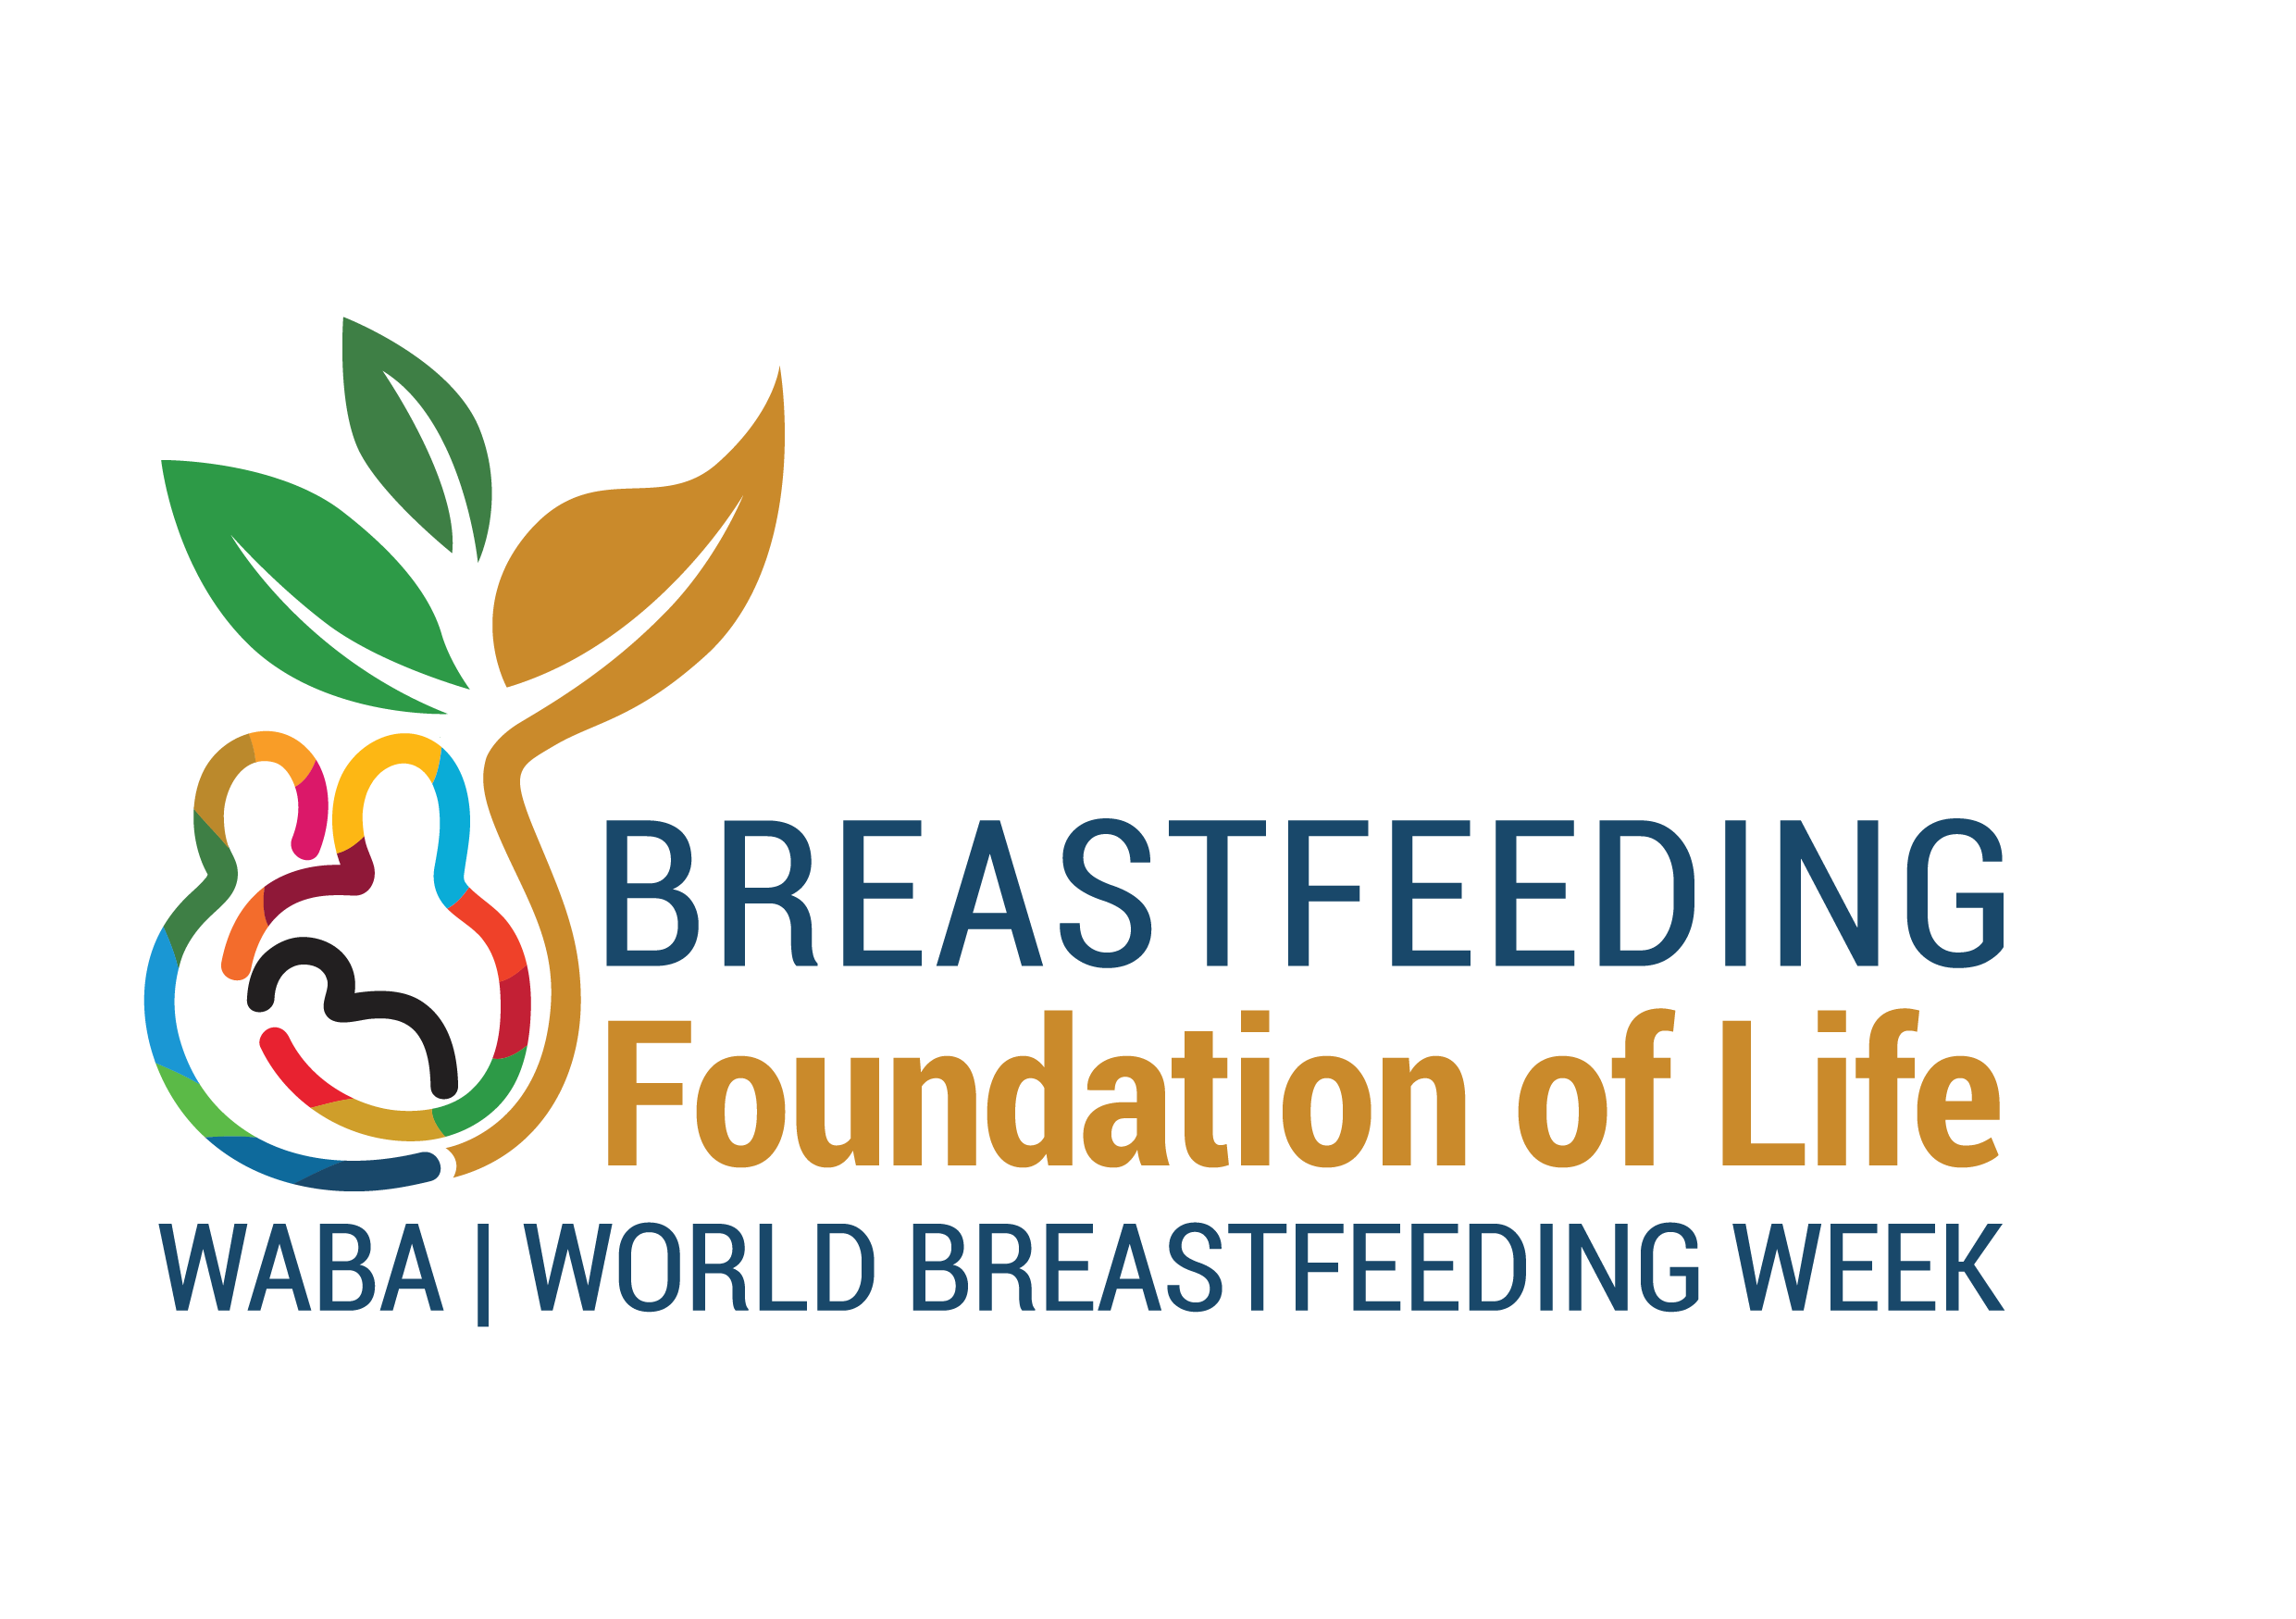 World Breastfeeding week. Waba.